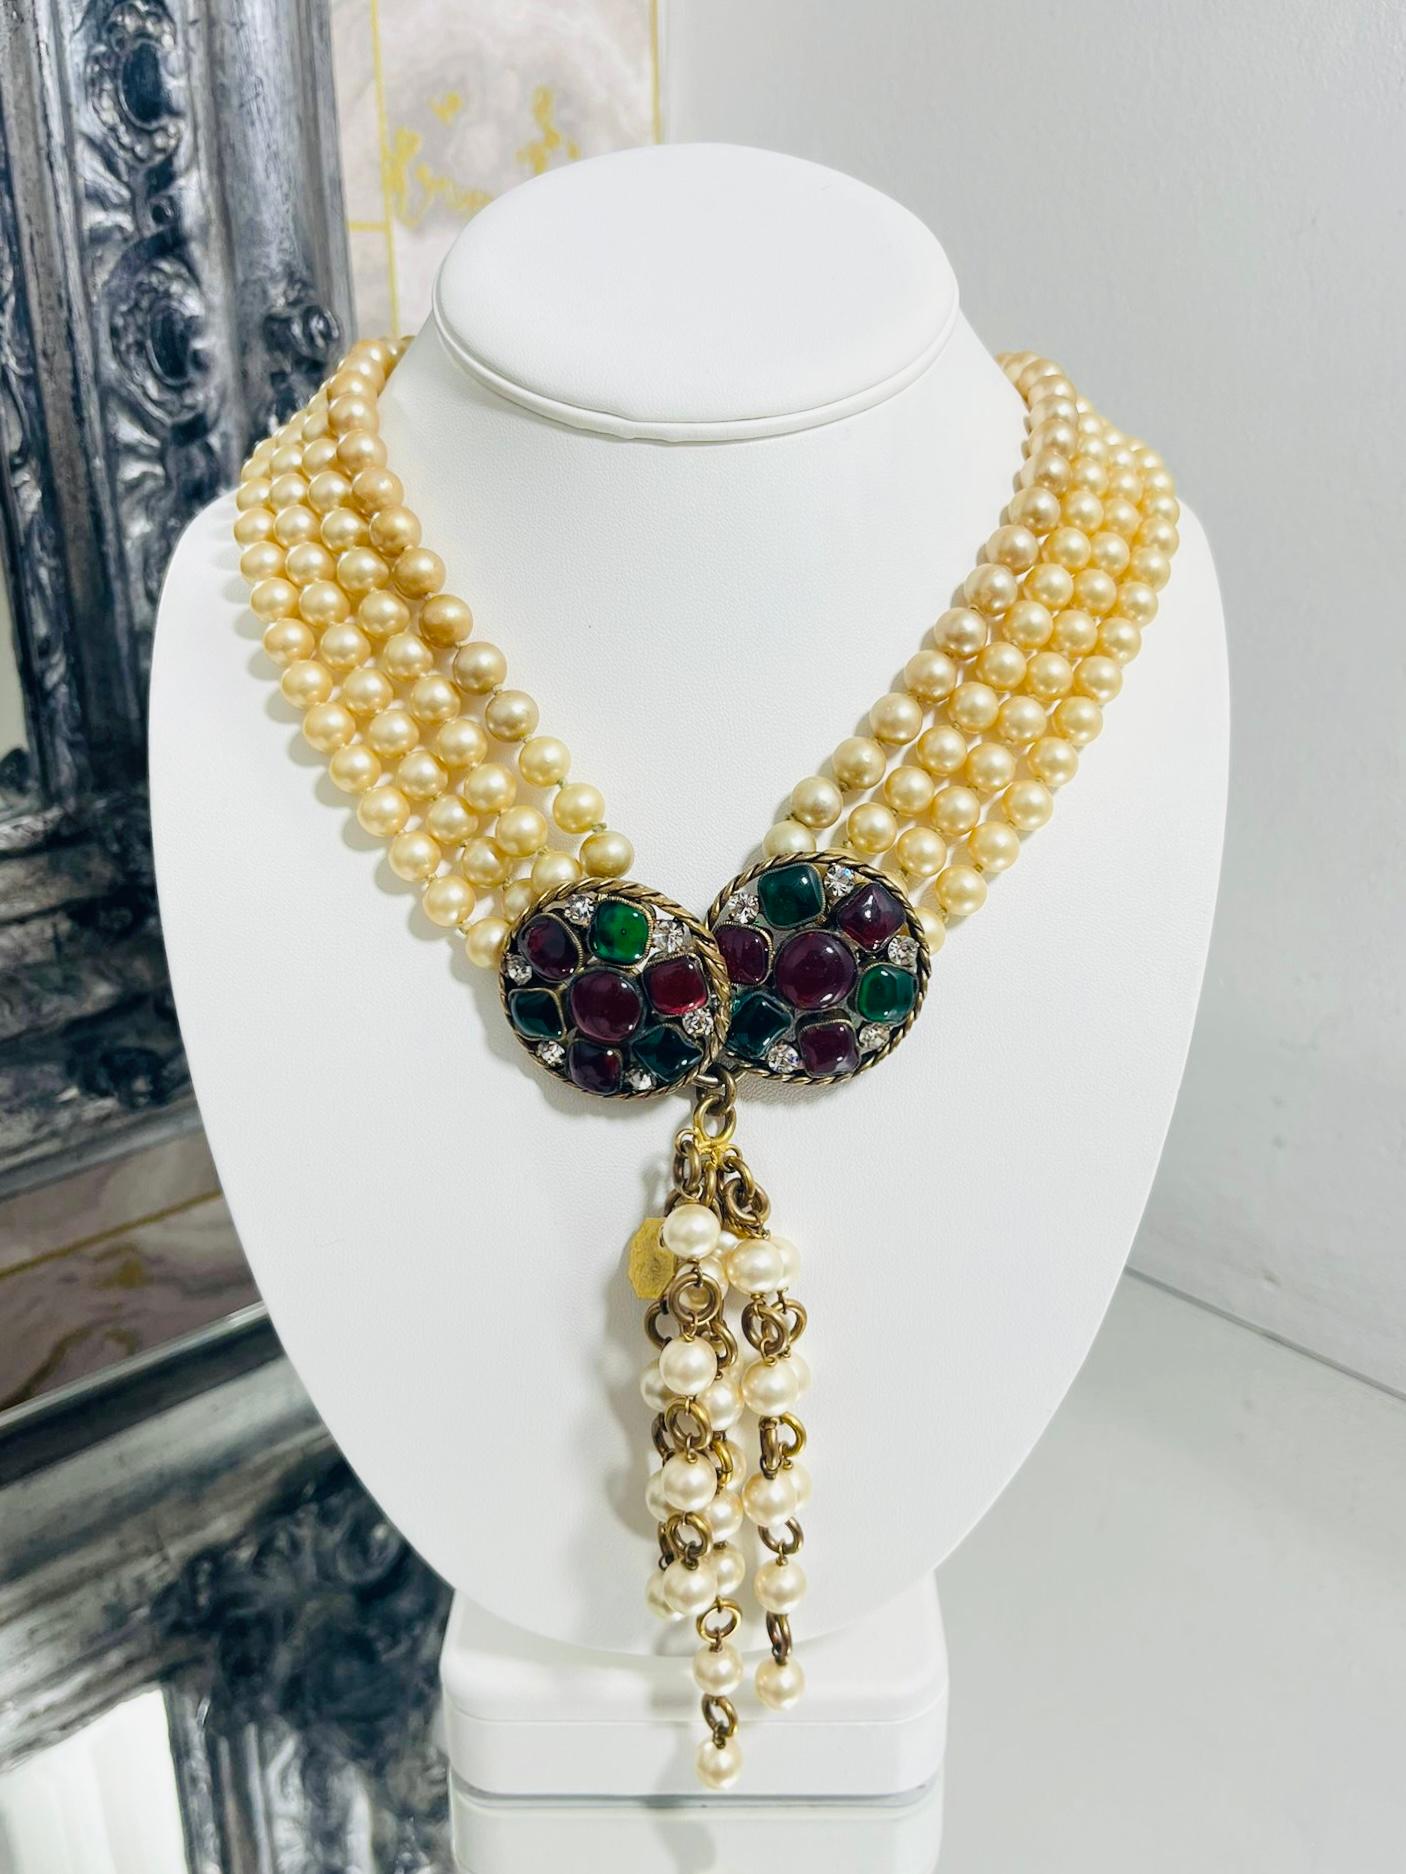 Chanel Collier vintage perles et Gripoix par Victoire de Castellane

Collier de perles orné de gripoix et de cristaux.

Quatre rangs de fausses perles avec garniture plaquée or 24 carats, sertis de perles multicolores. 

verre/gripoix, cristaux et